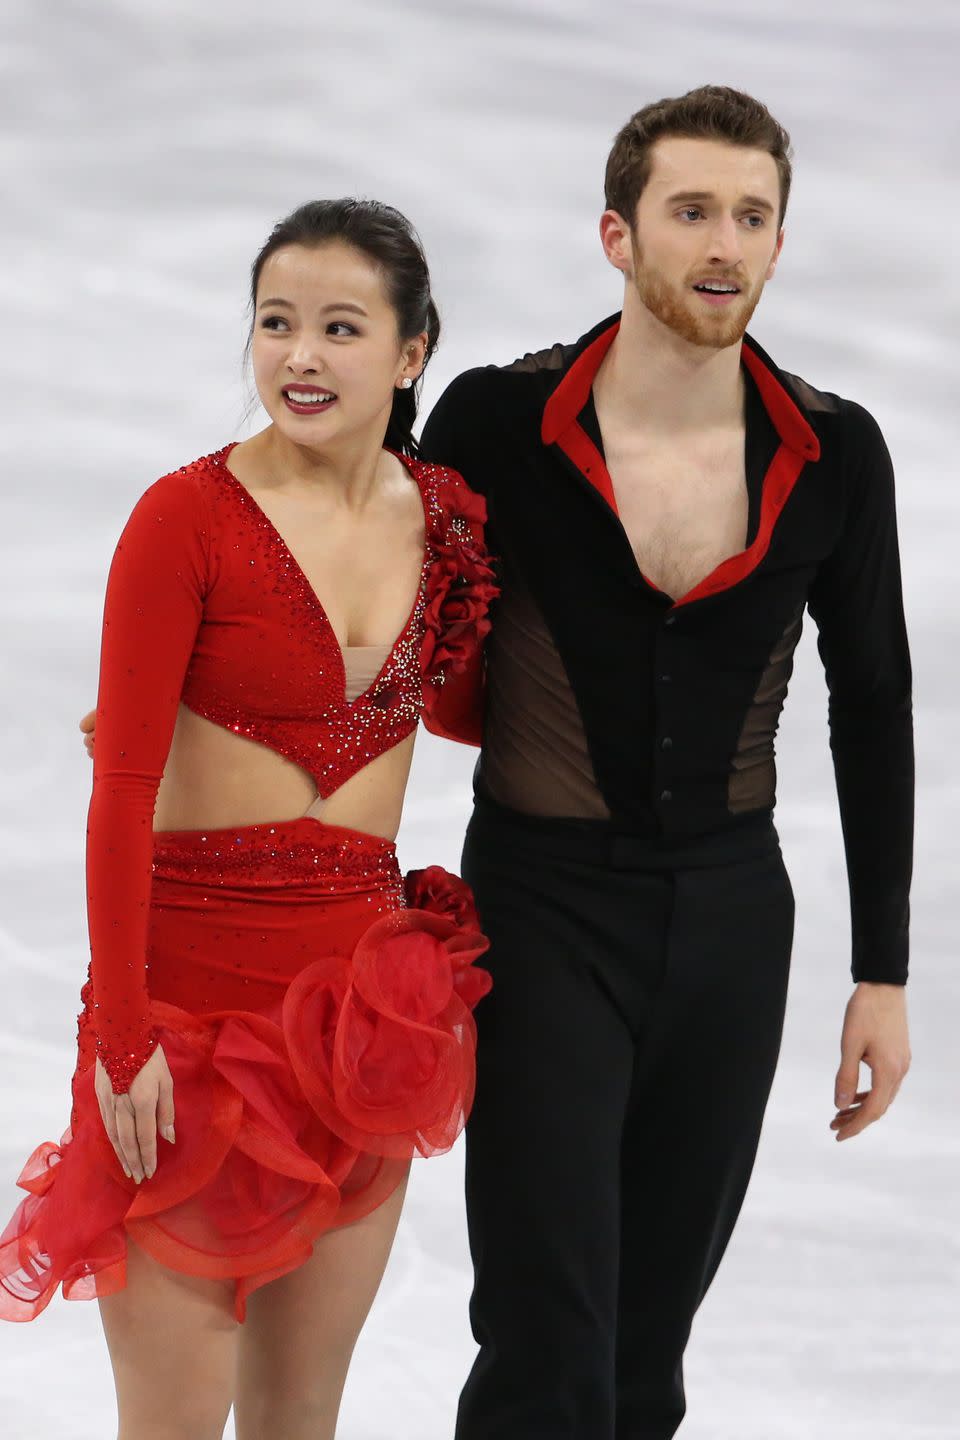 2018: Yura Min and Alexander Gamlin